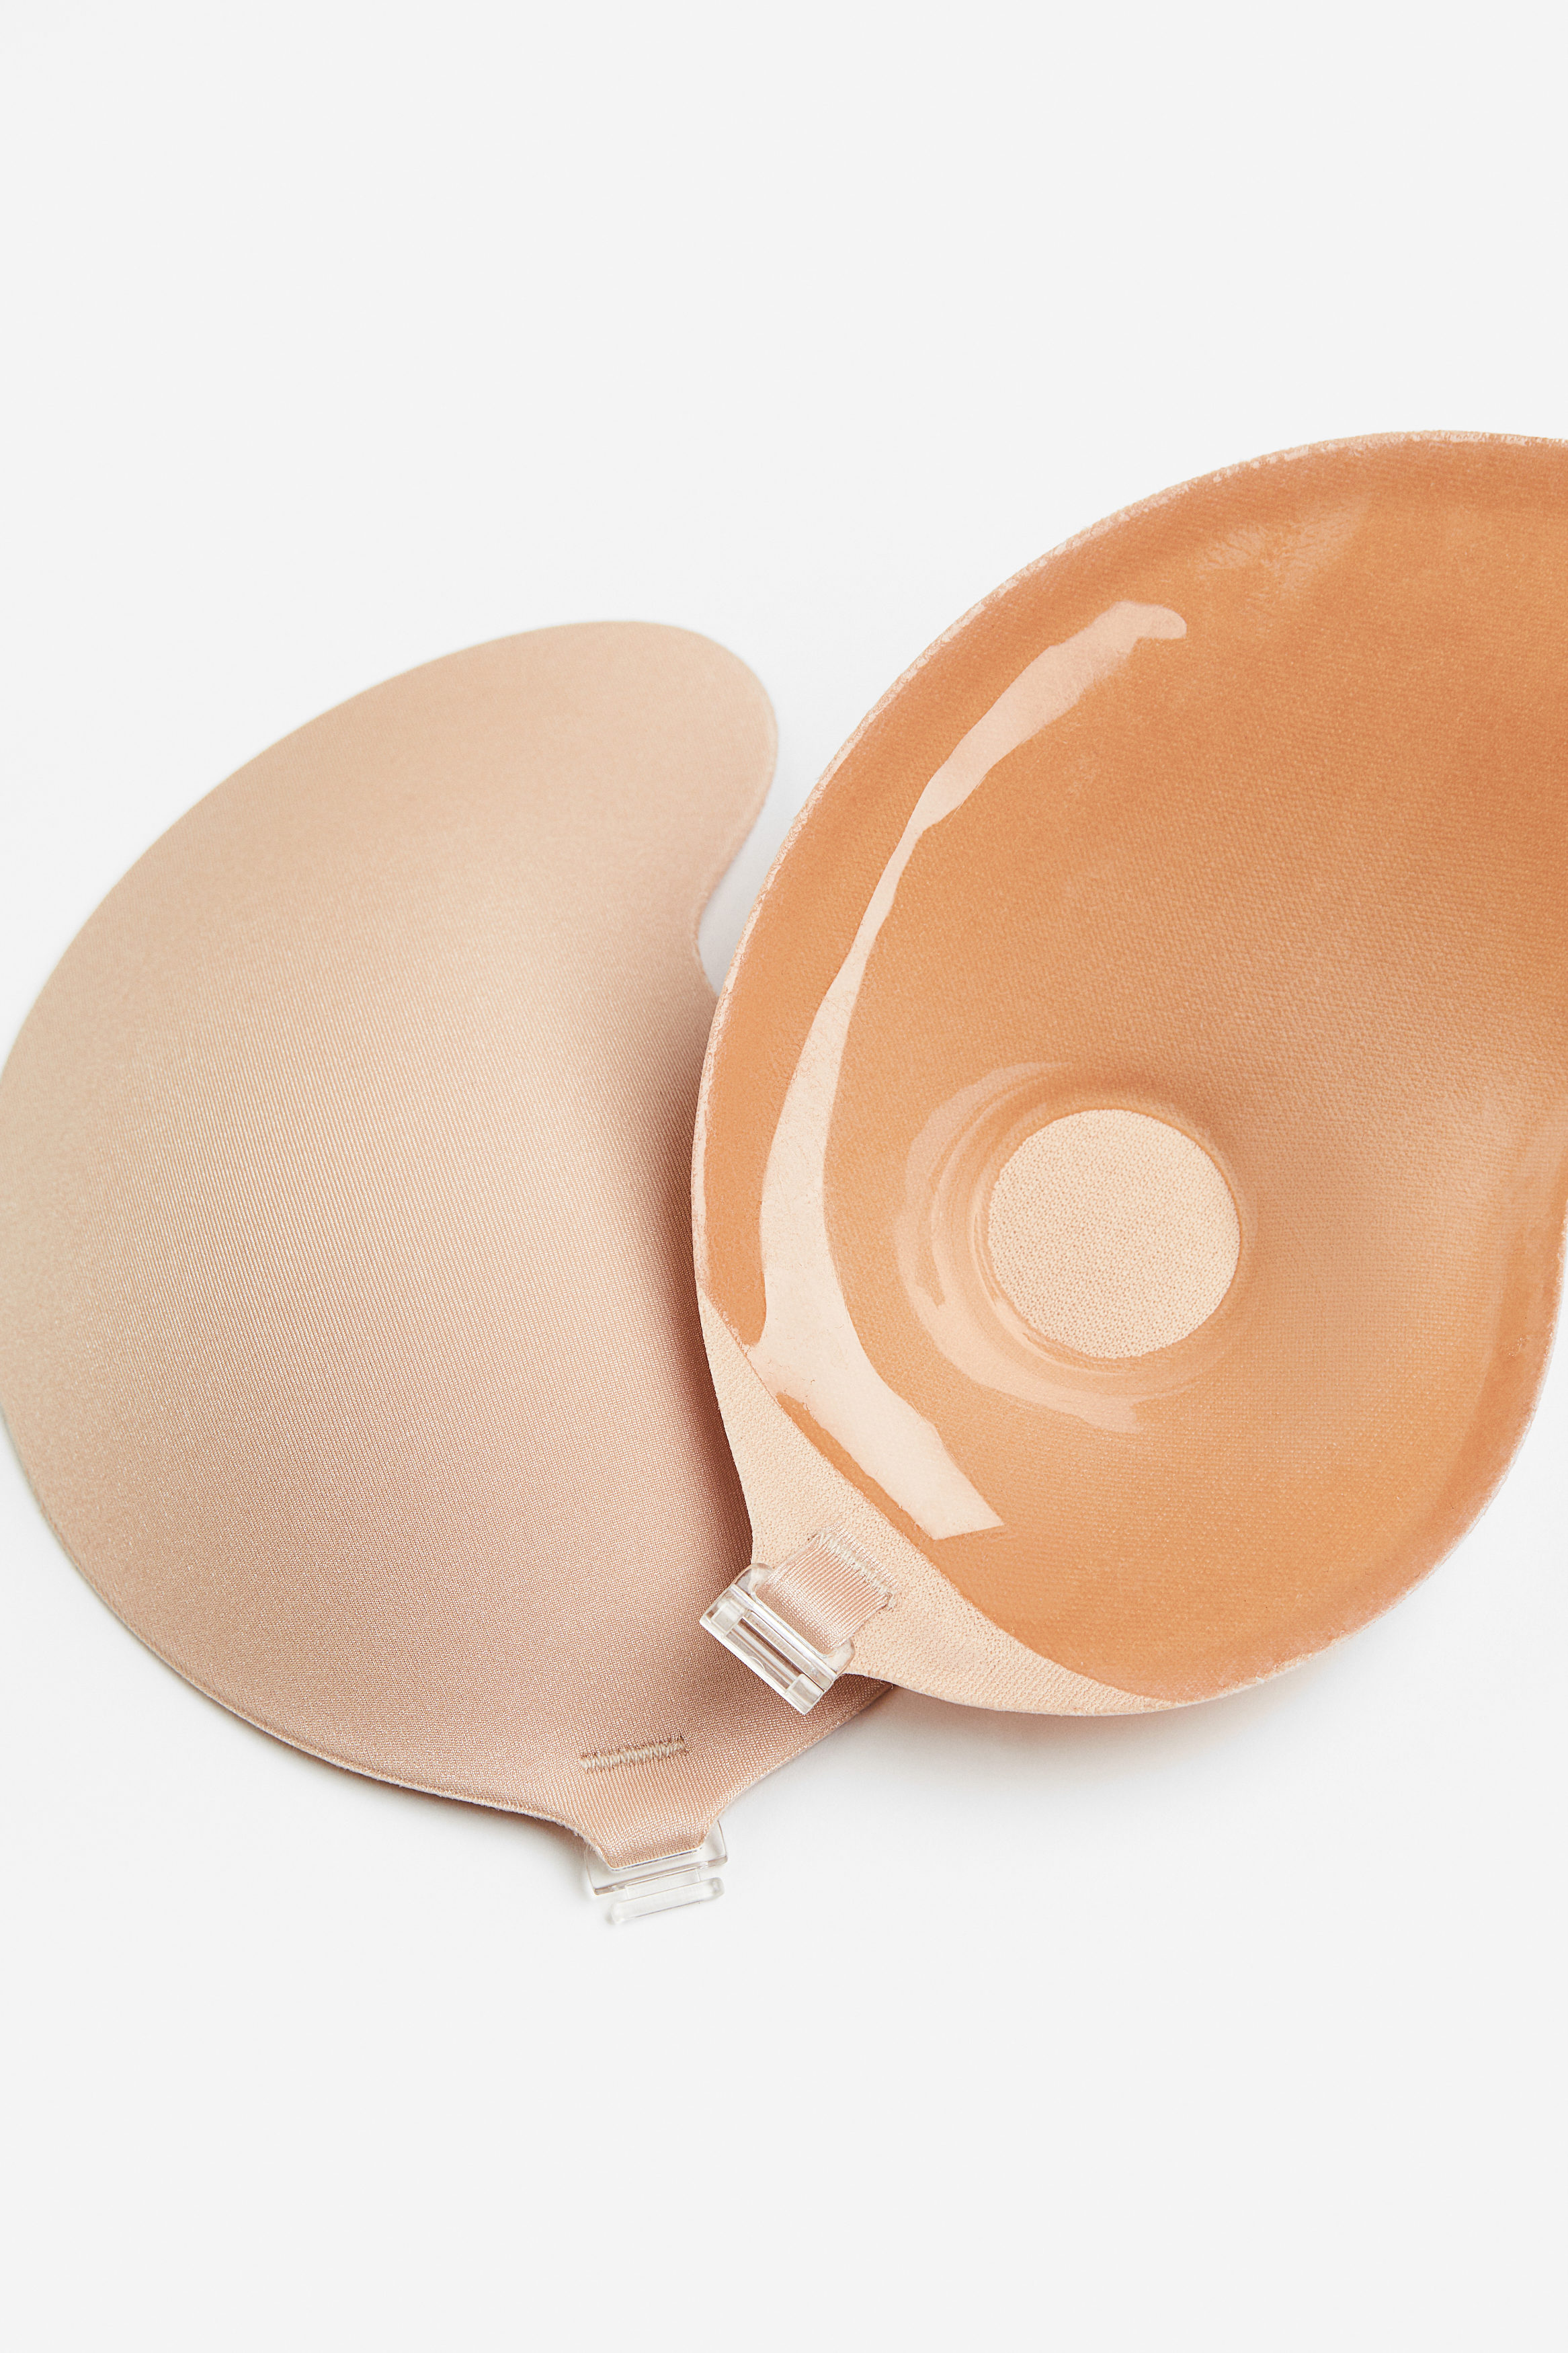 Buy Self-adhesive bra online in Kuwait